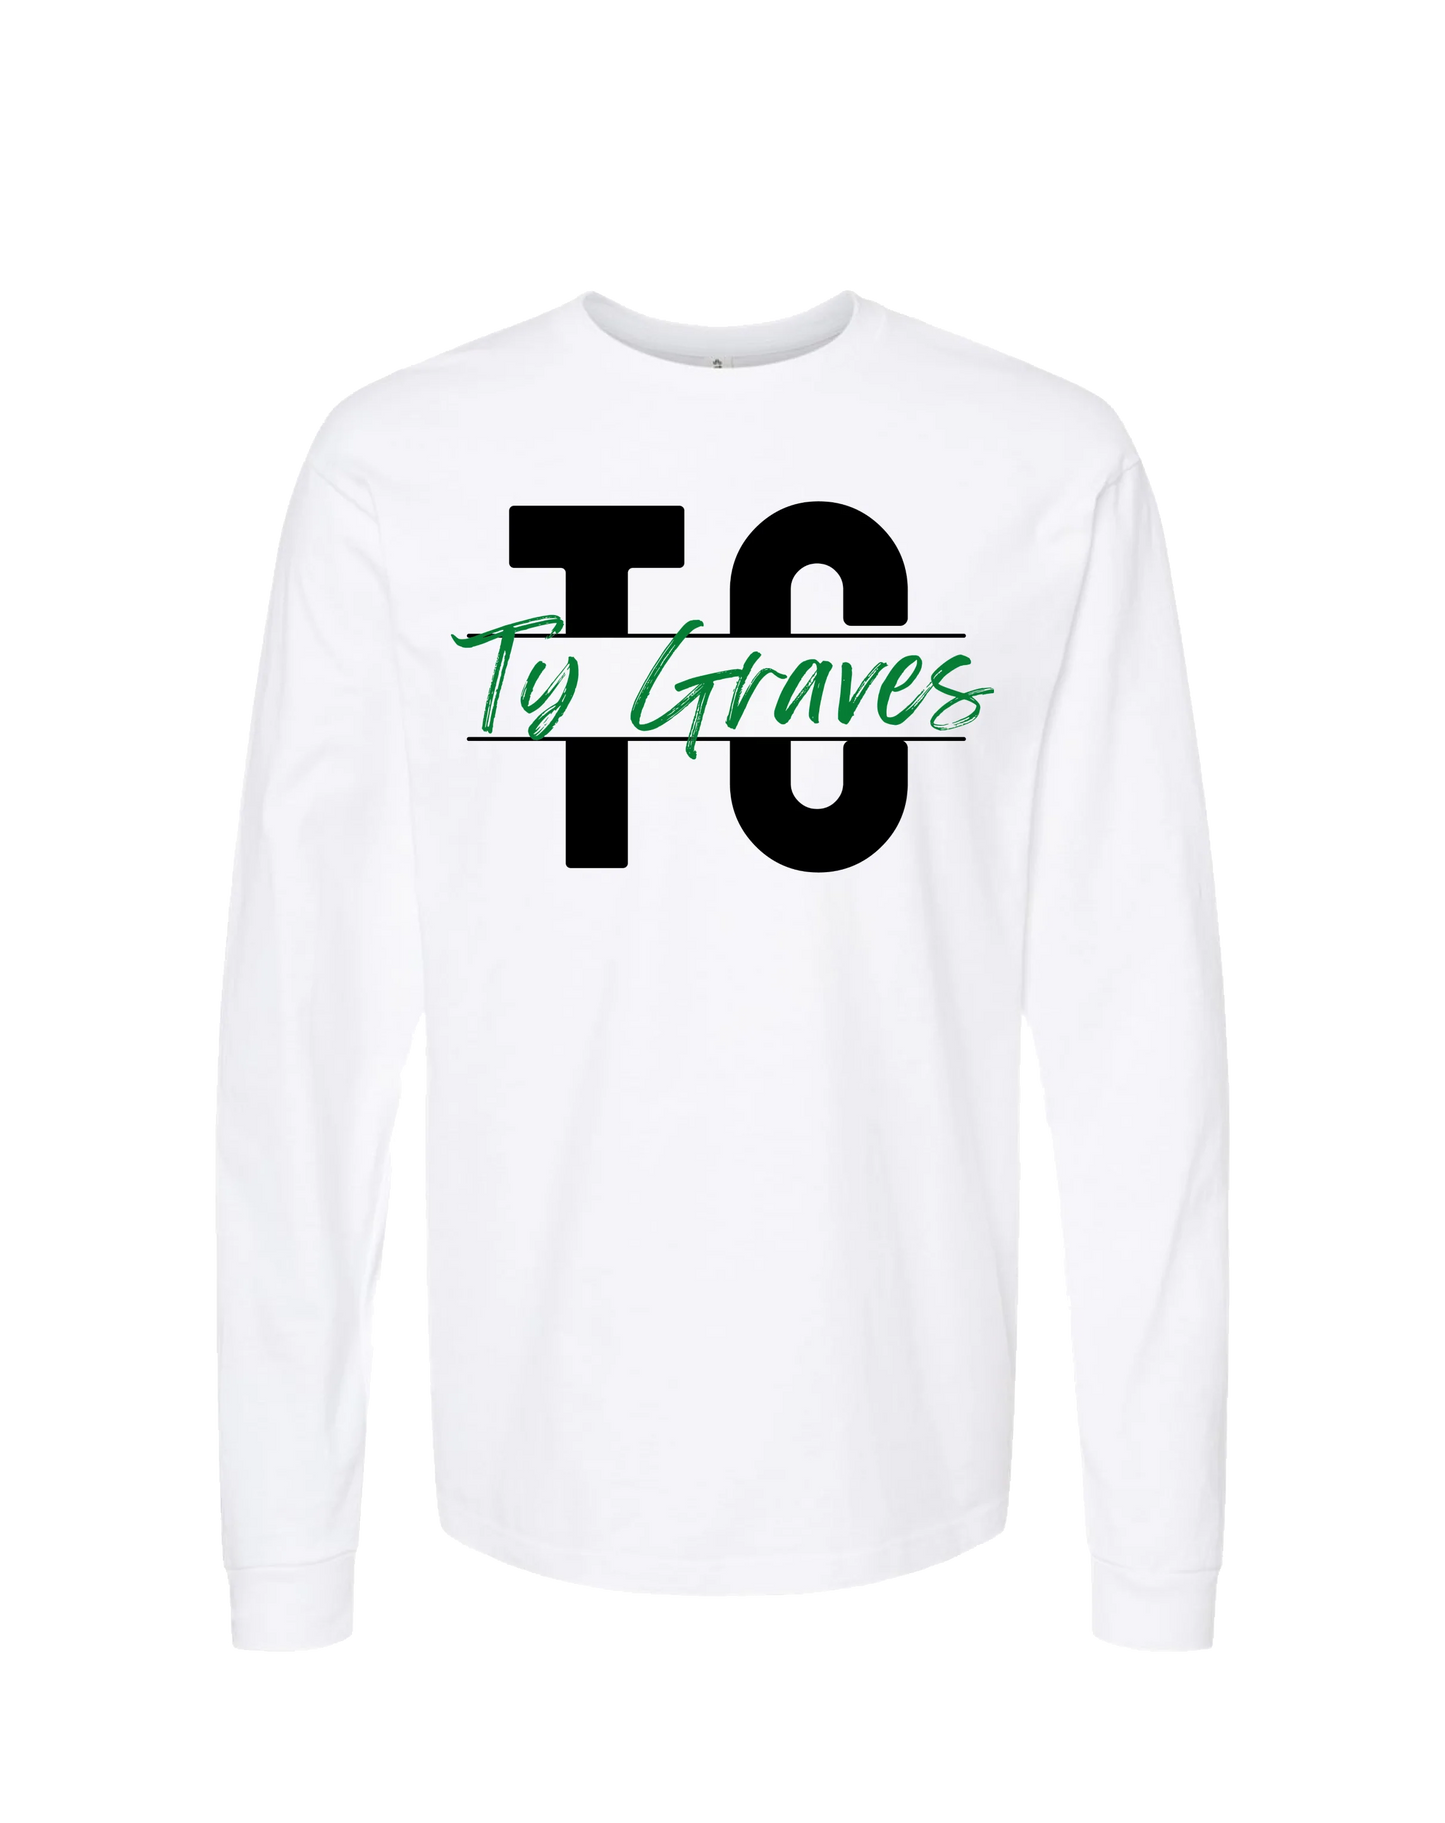 Ty Graves - Logo - White Long Sleeve T